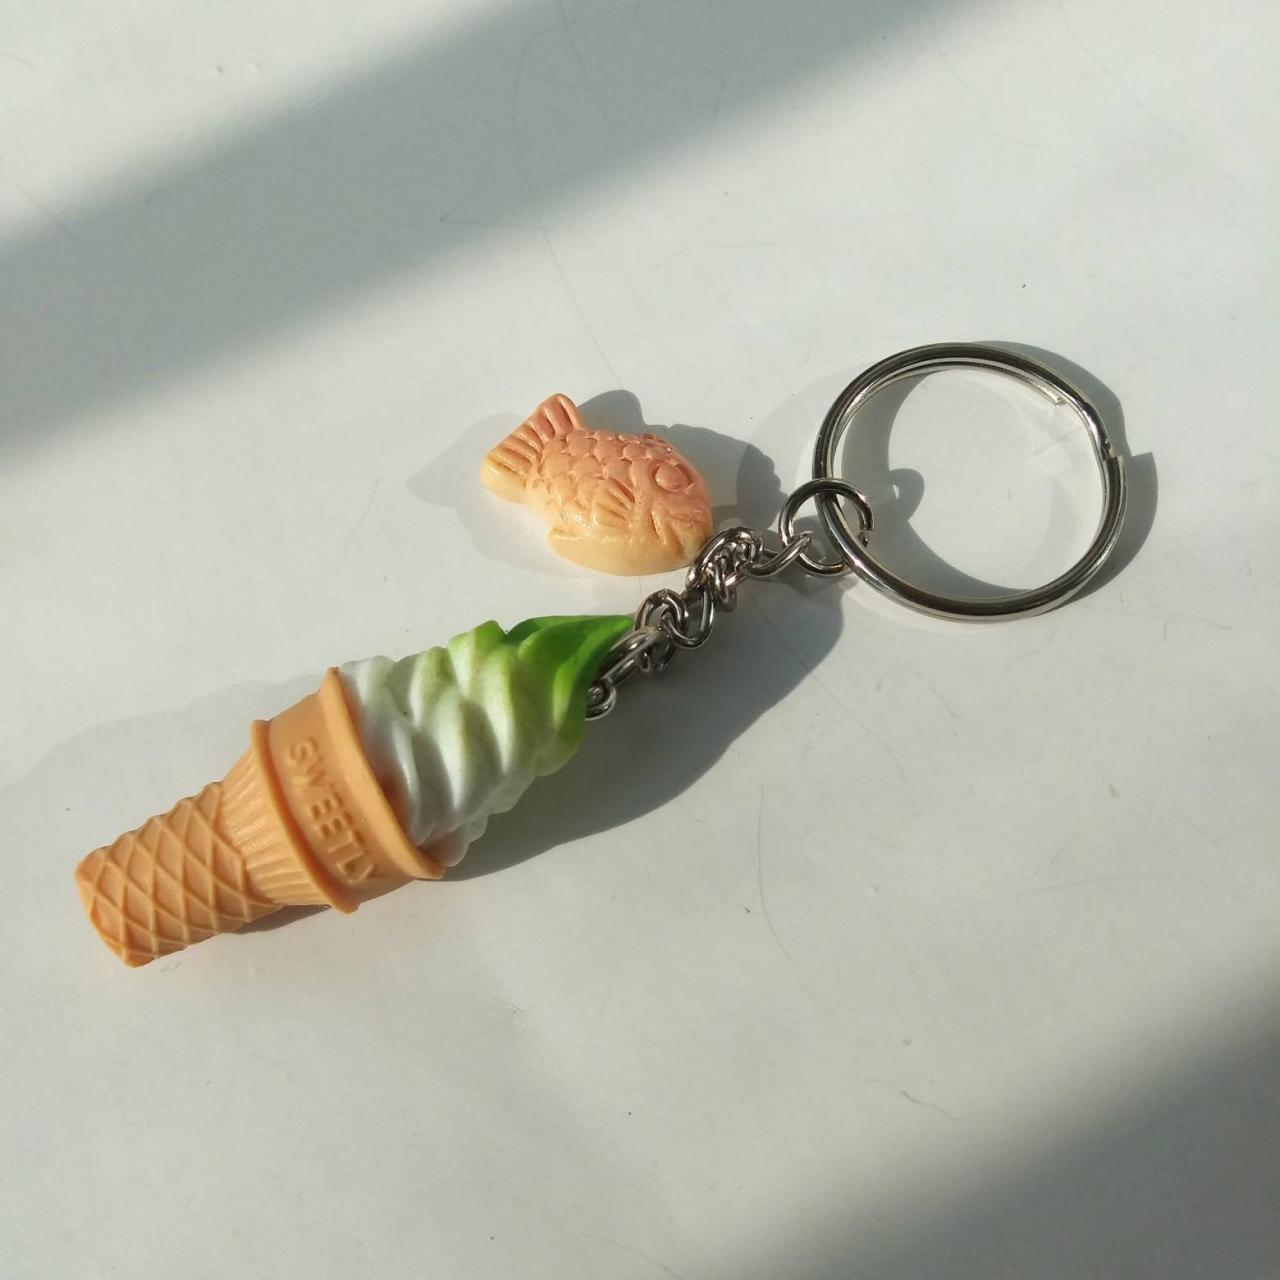 Green Tea & Vanilla Ice-cream Cone With Fish-sharped Bun Keychain, Cute Keychain, Taiyaki Keychain, Dessert Keychain